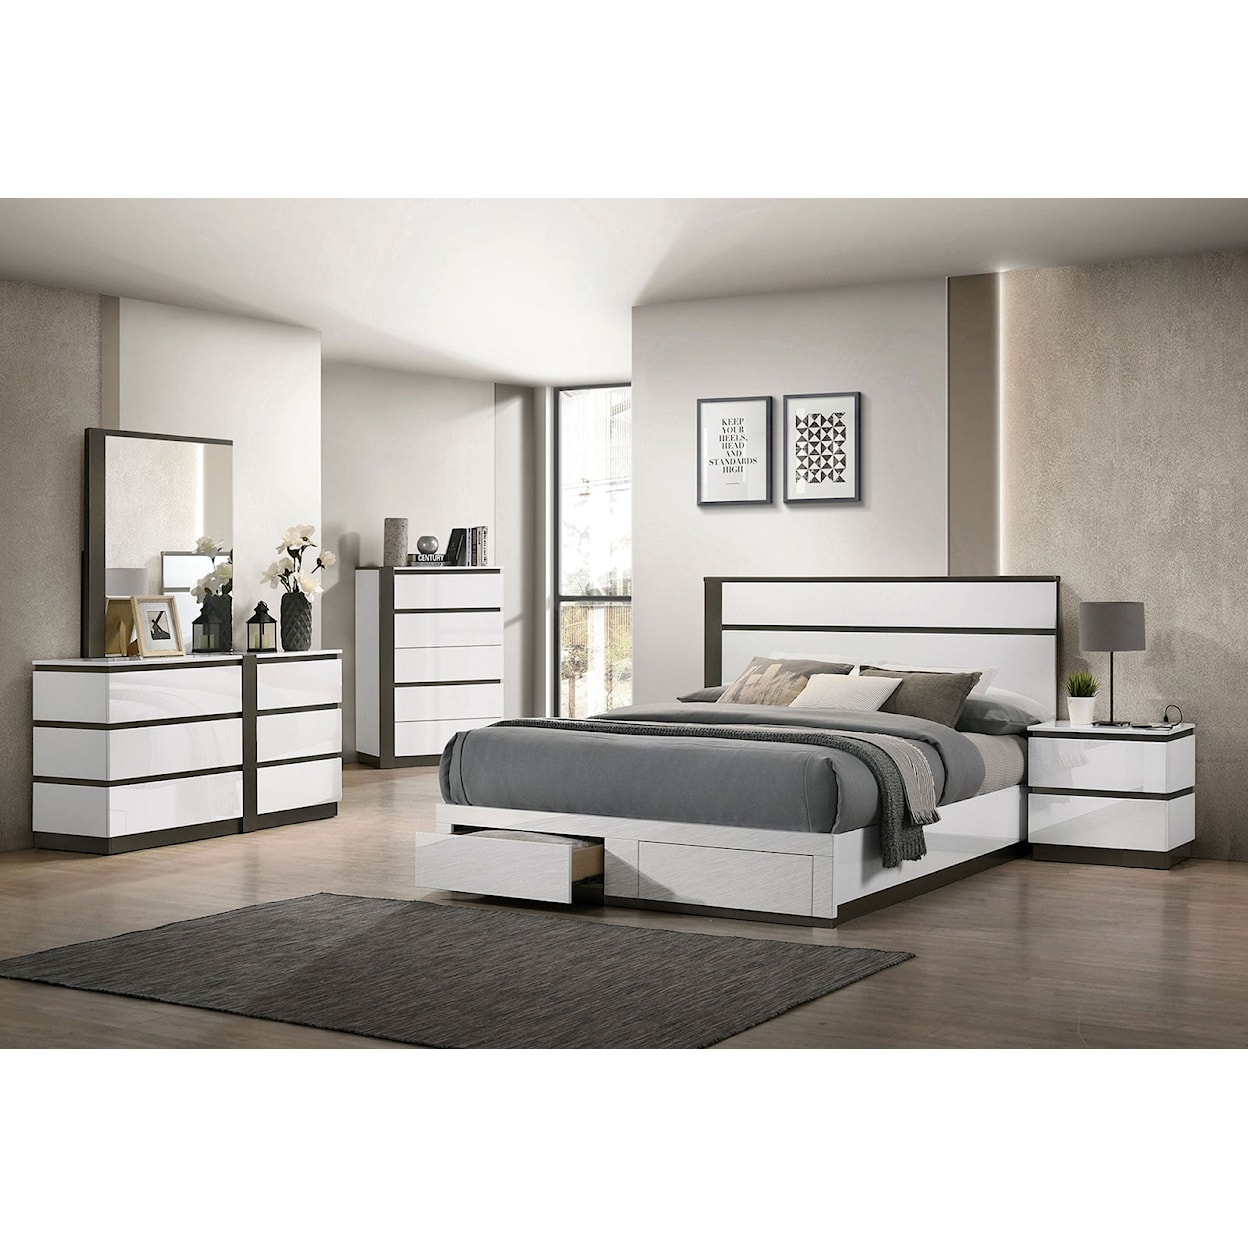 Furniture of America Birsfelden 5-Piece Queen Bedroom Set with 2 Nightstands